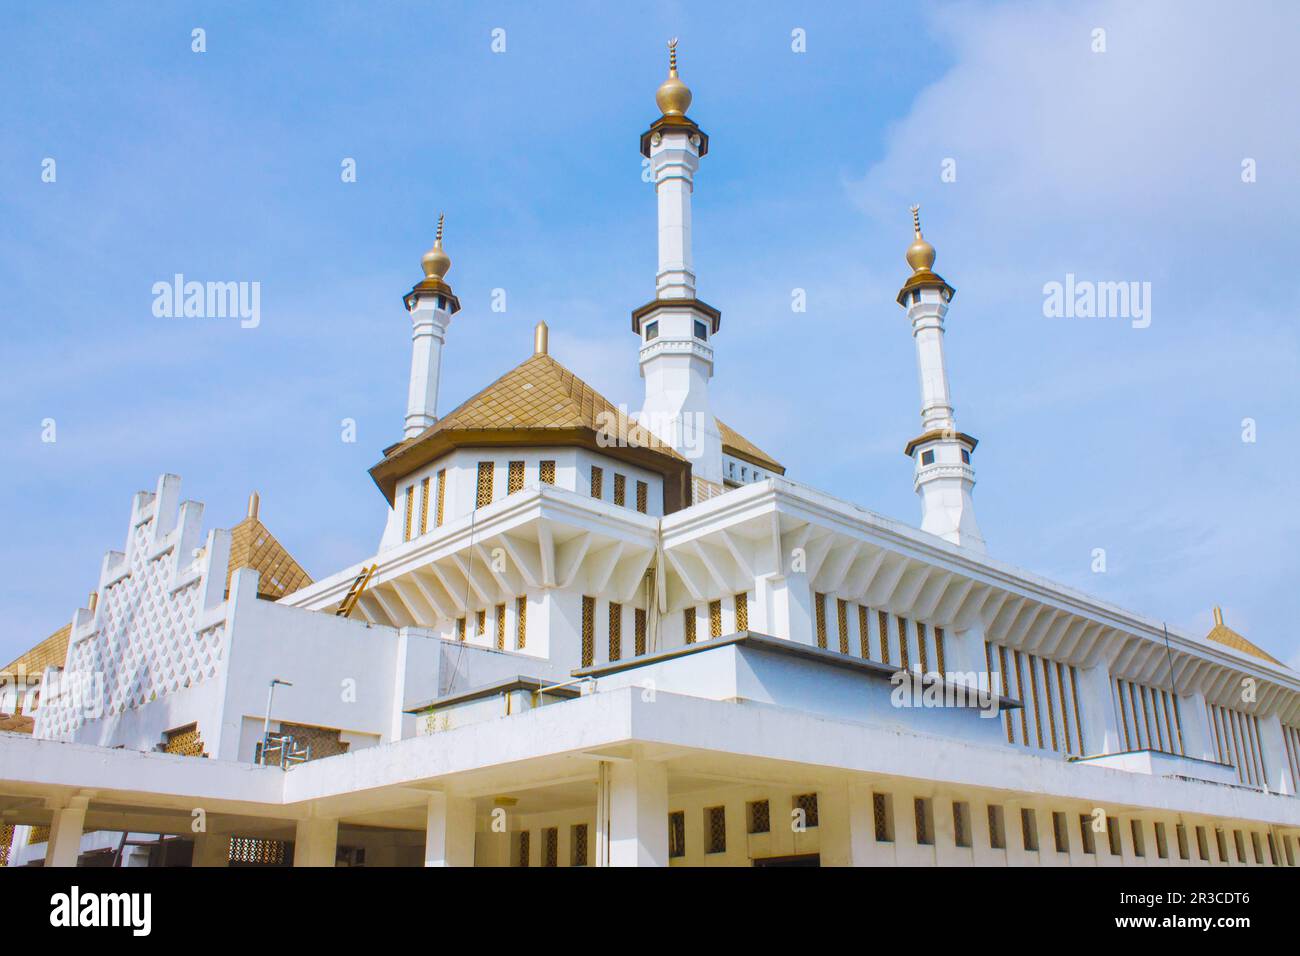 Große weiße Moschee mit goldenen Kuppeln, blauer Himmelshintergrund, Tasikmalaya, West-Java, Indonesien Stockfoto